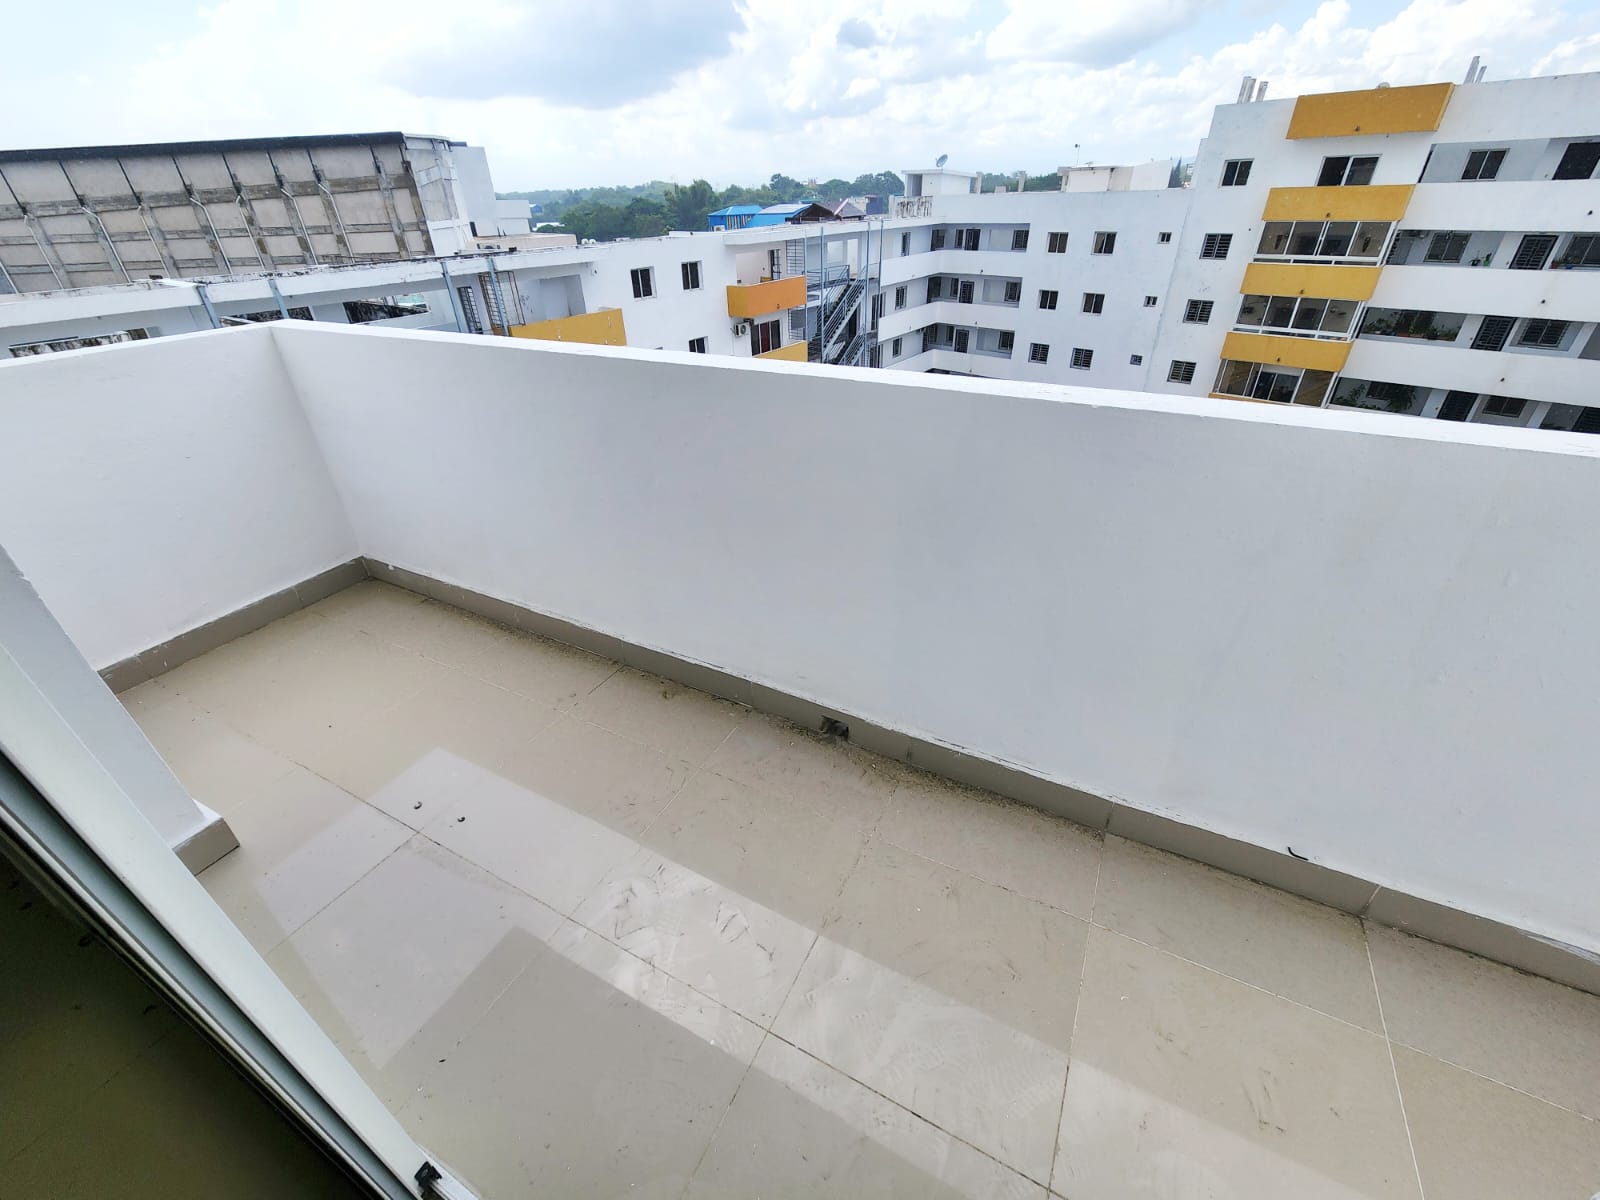 Venta de apartamento con terraza en av.Jacobo Majluta. Foto 7212656-1.jpg